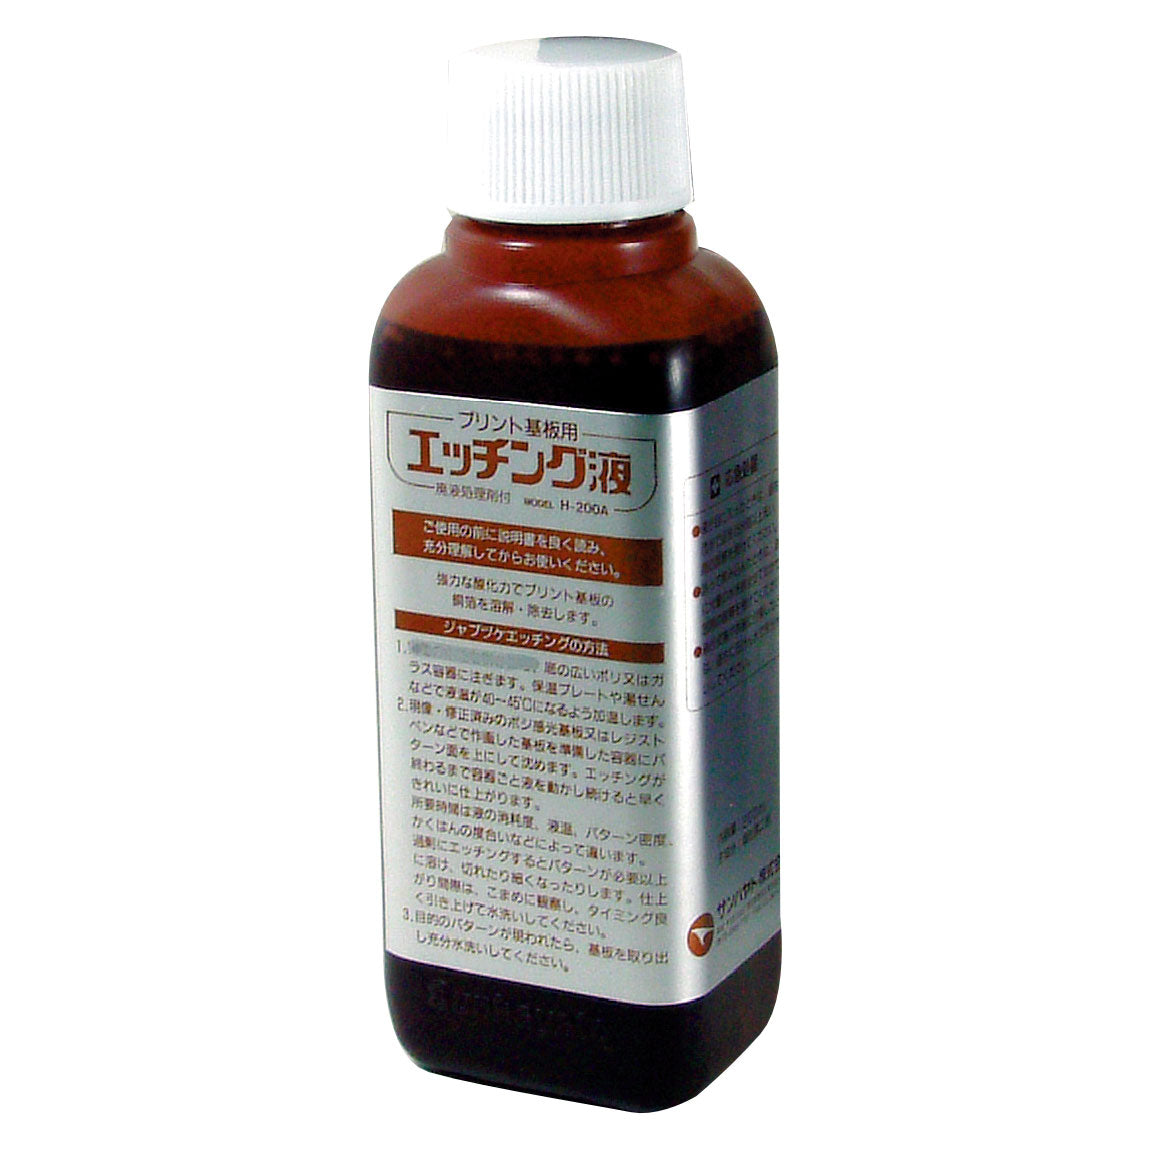 エッチング液（200ml）（H-200A）